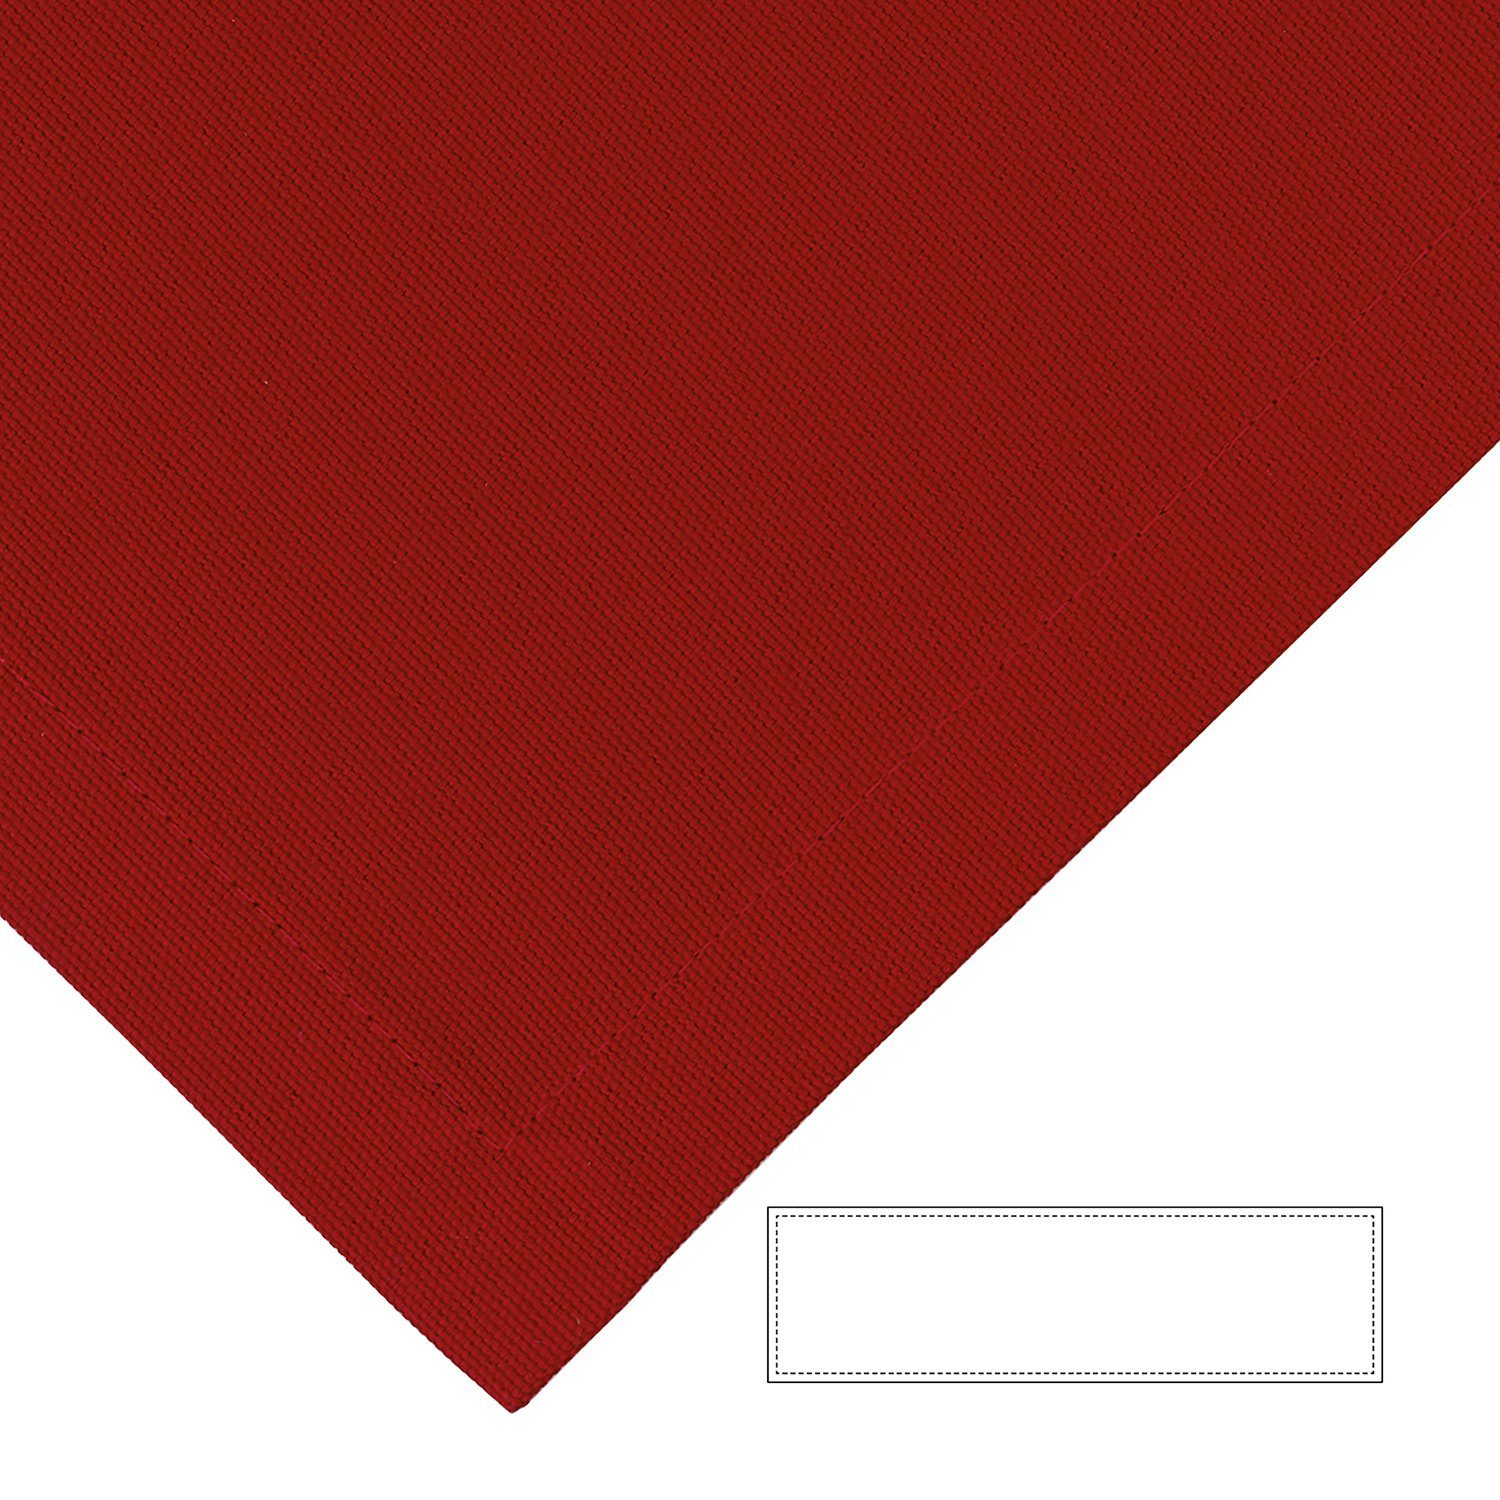 Fink Tischläufer Tischläufer Bente - rot - 100% Baumwolle - B.40cm x T.140cm, bis 40° waschbar